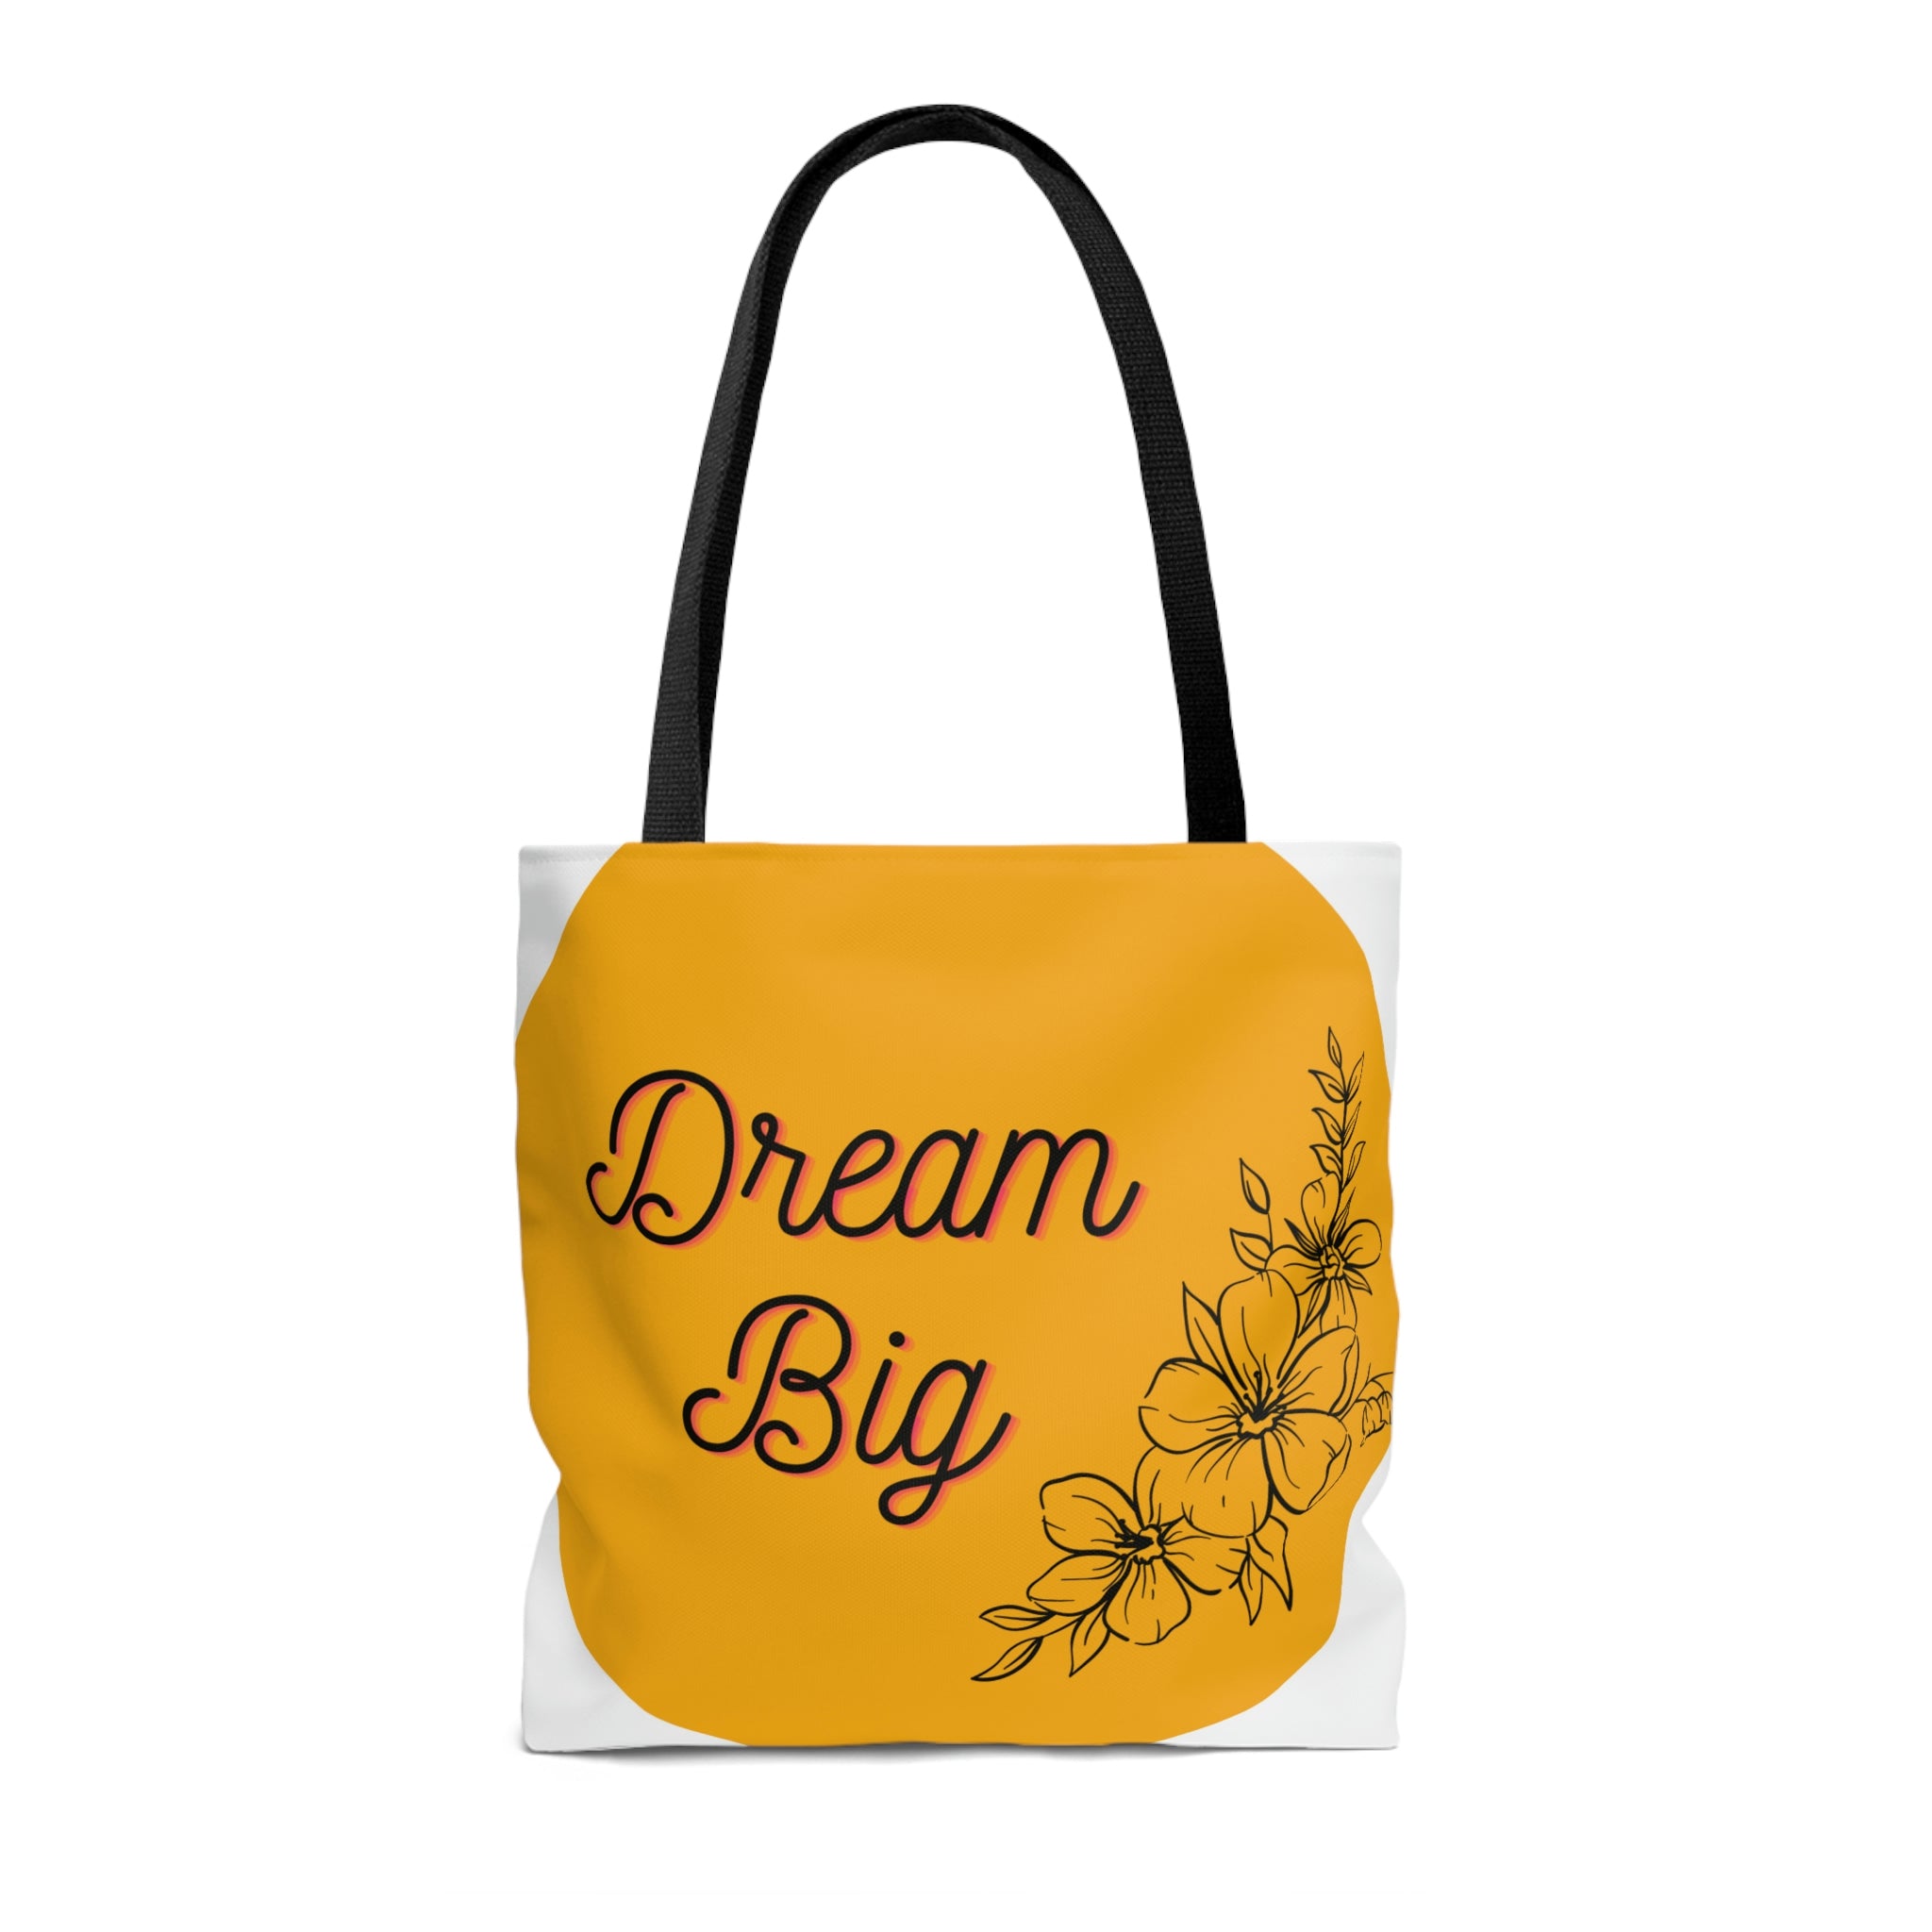 DreamB/AOP Tote Bag